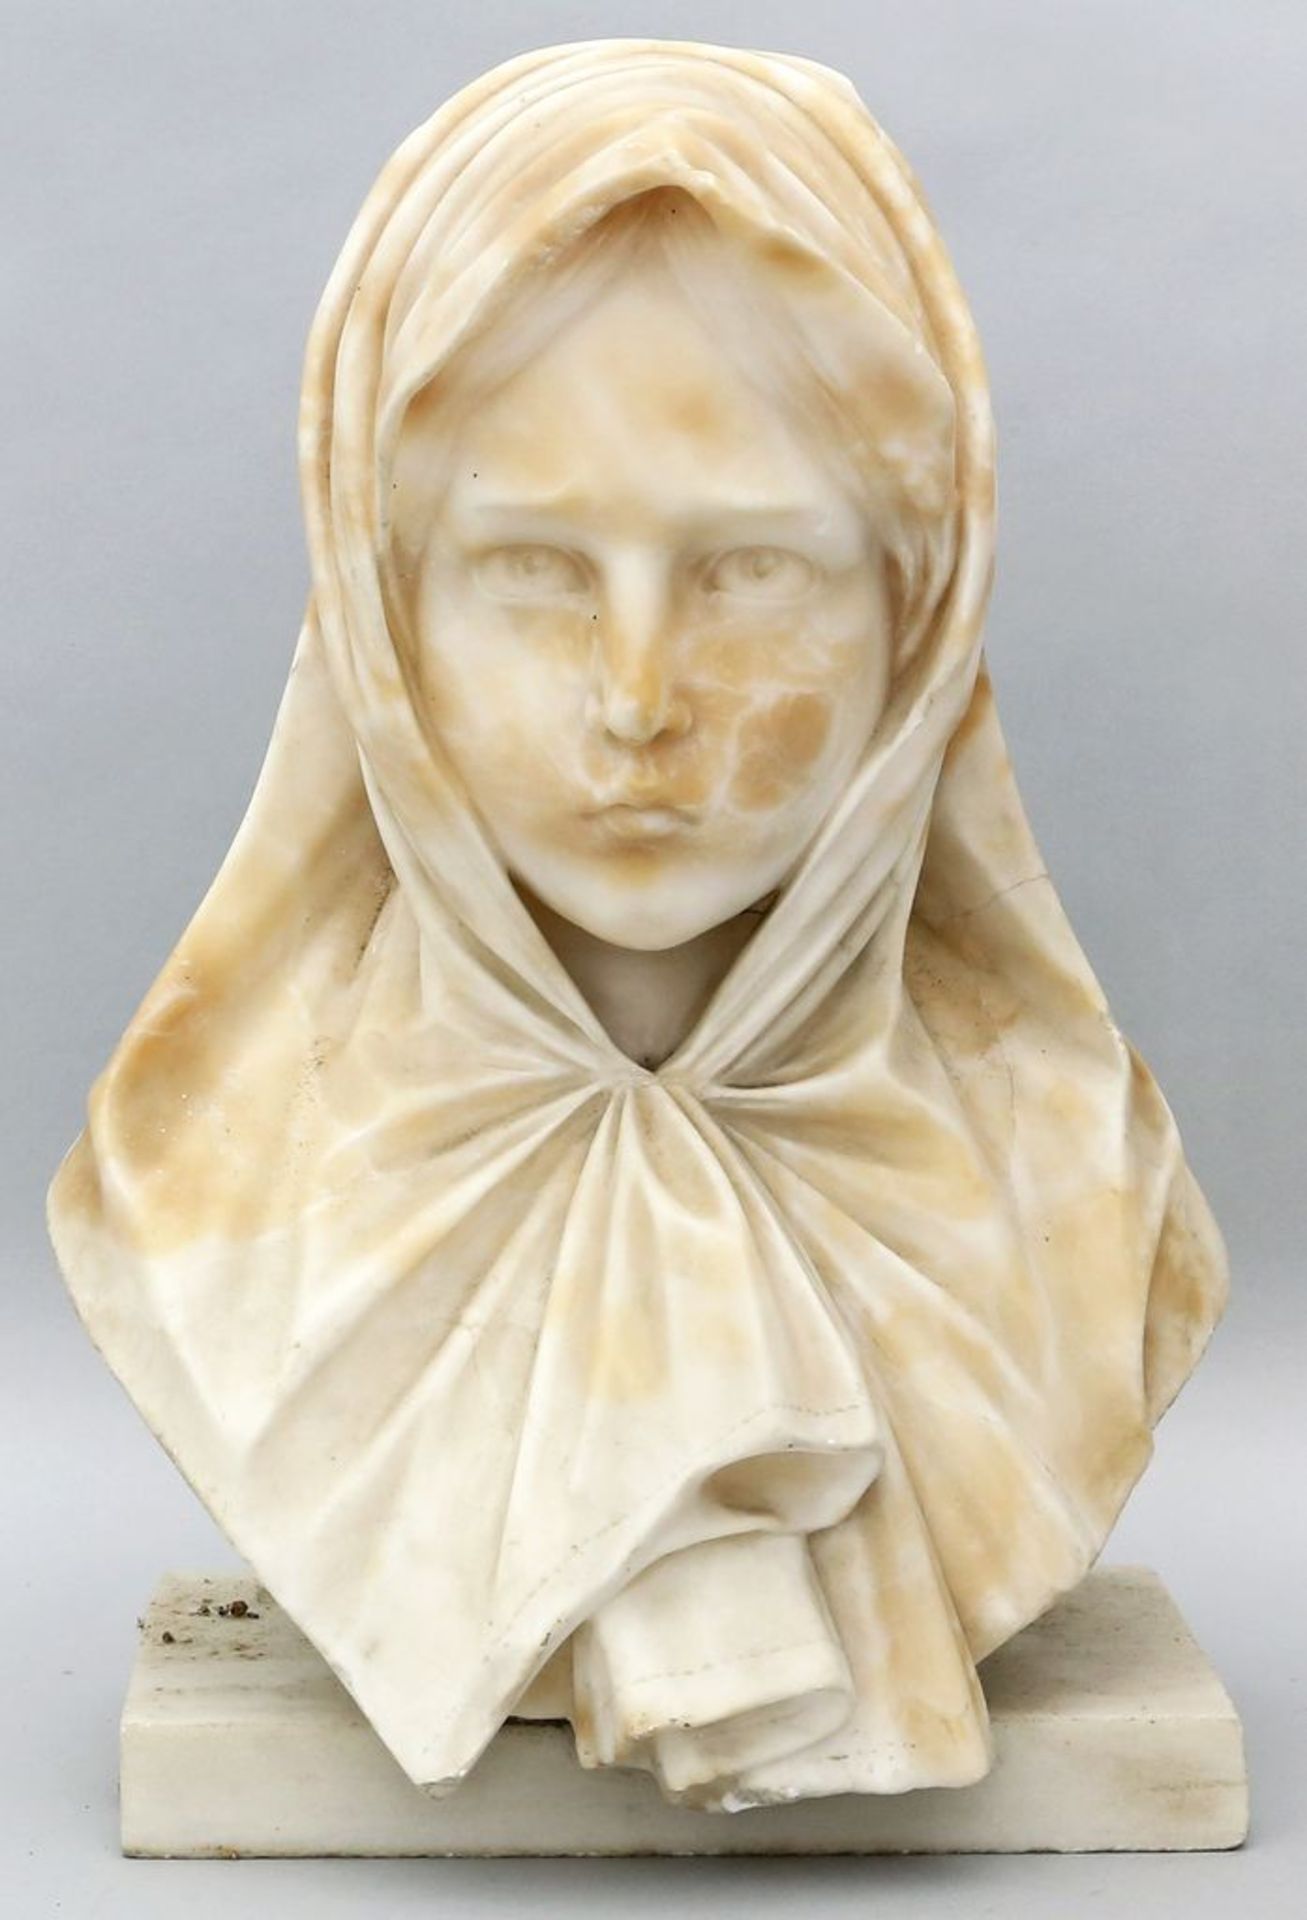 Unbekannter Künstler (20. Jh.) Skulptur "Frauenbüste". Alabaster, rundplastisch gear